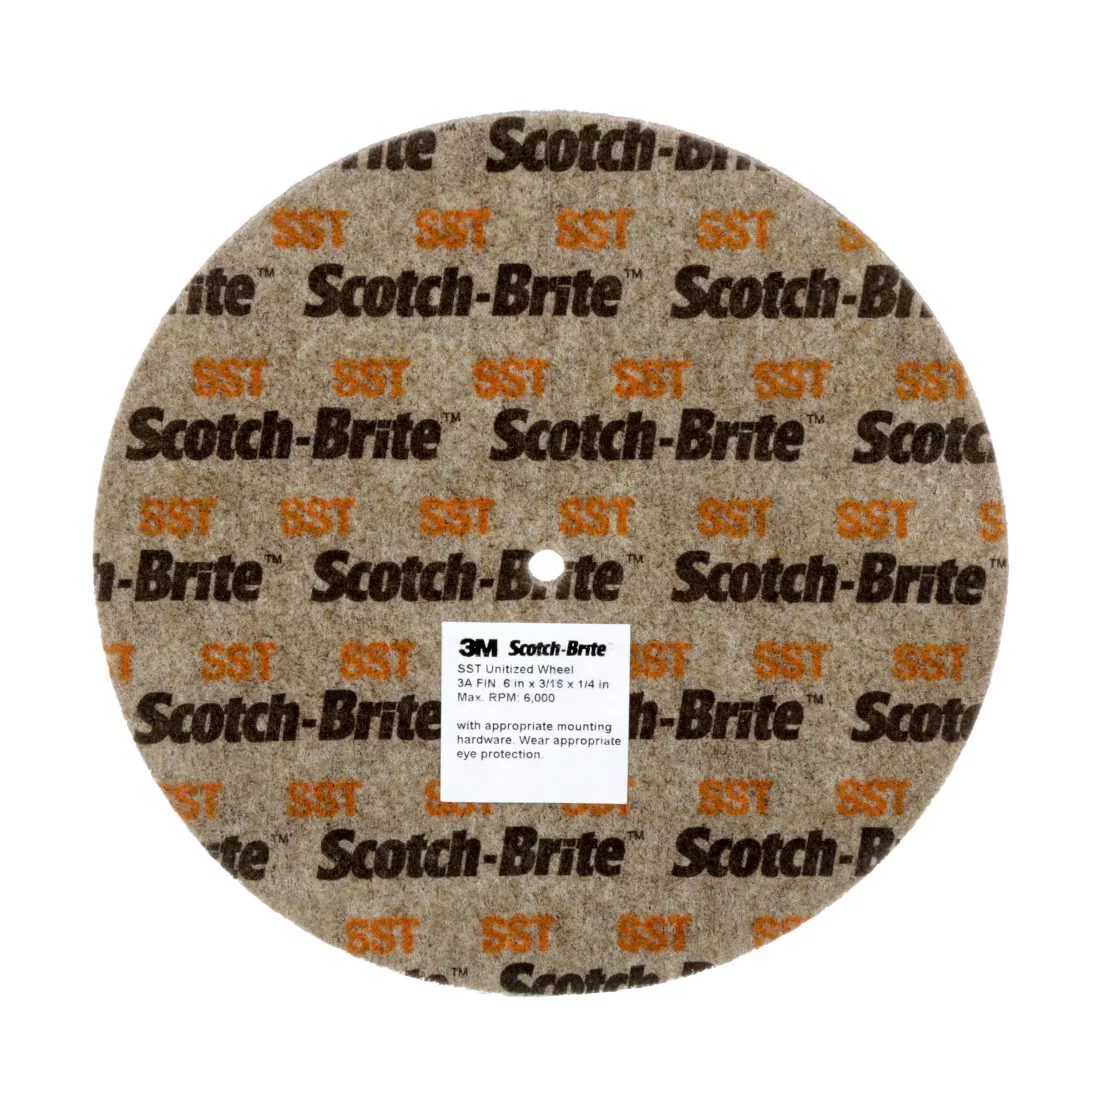 Scotch-Brite™ SST Unitized Wheel, 1 in x 1 in x 3/16 in 5A FIN, 50
ea/Case